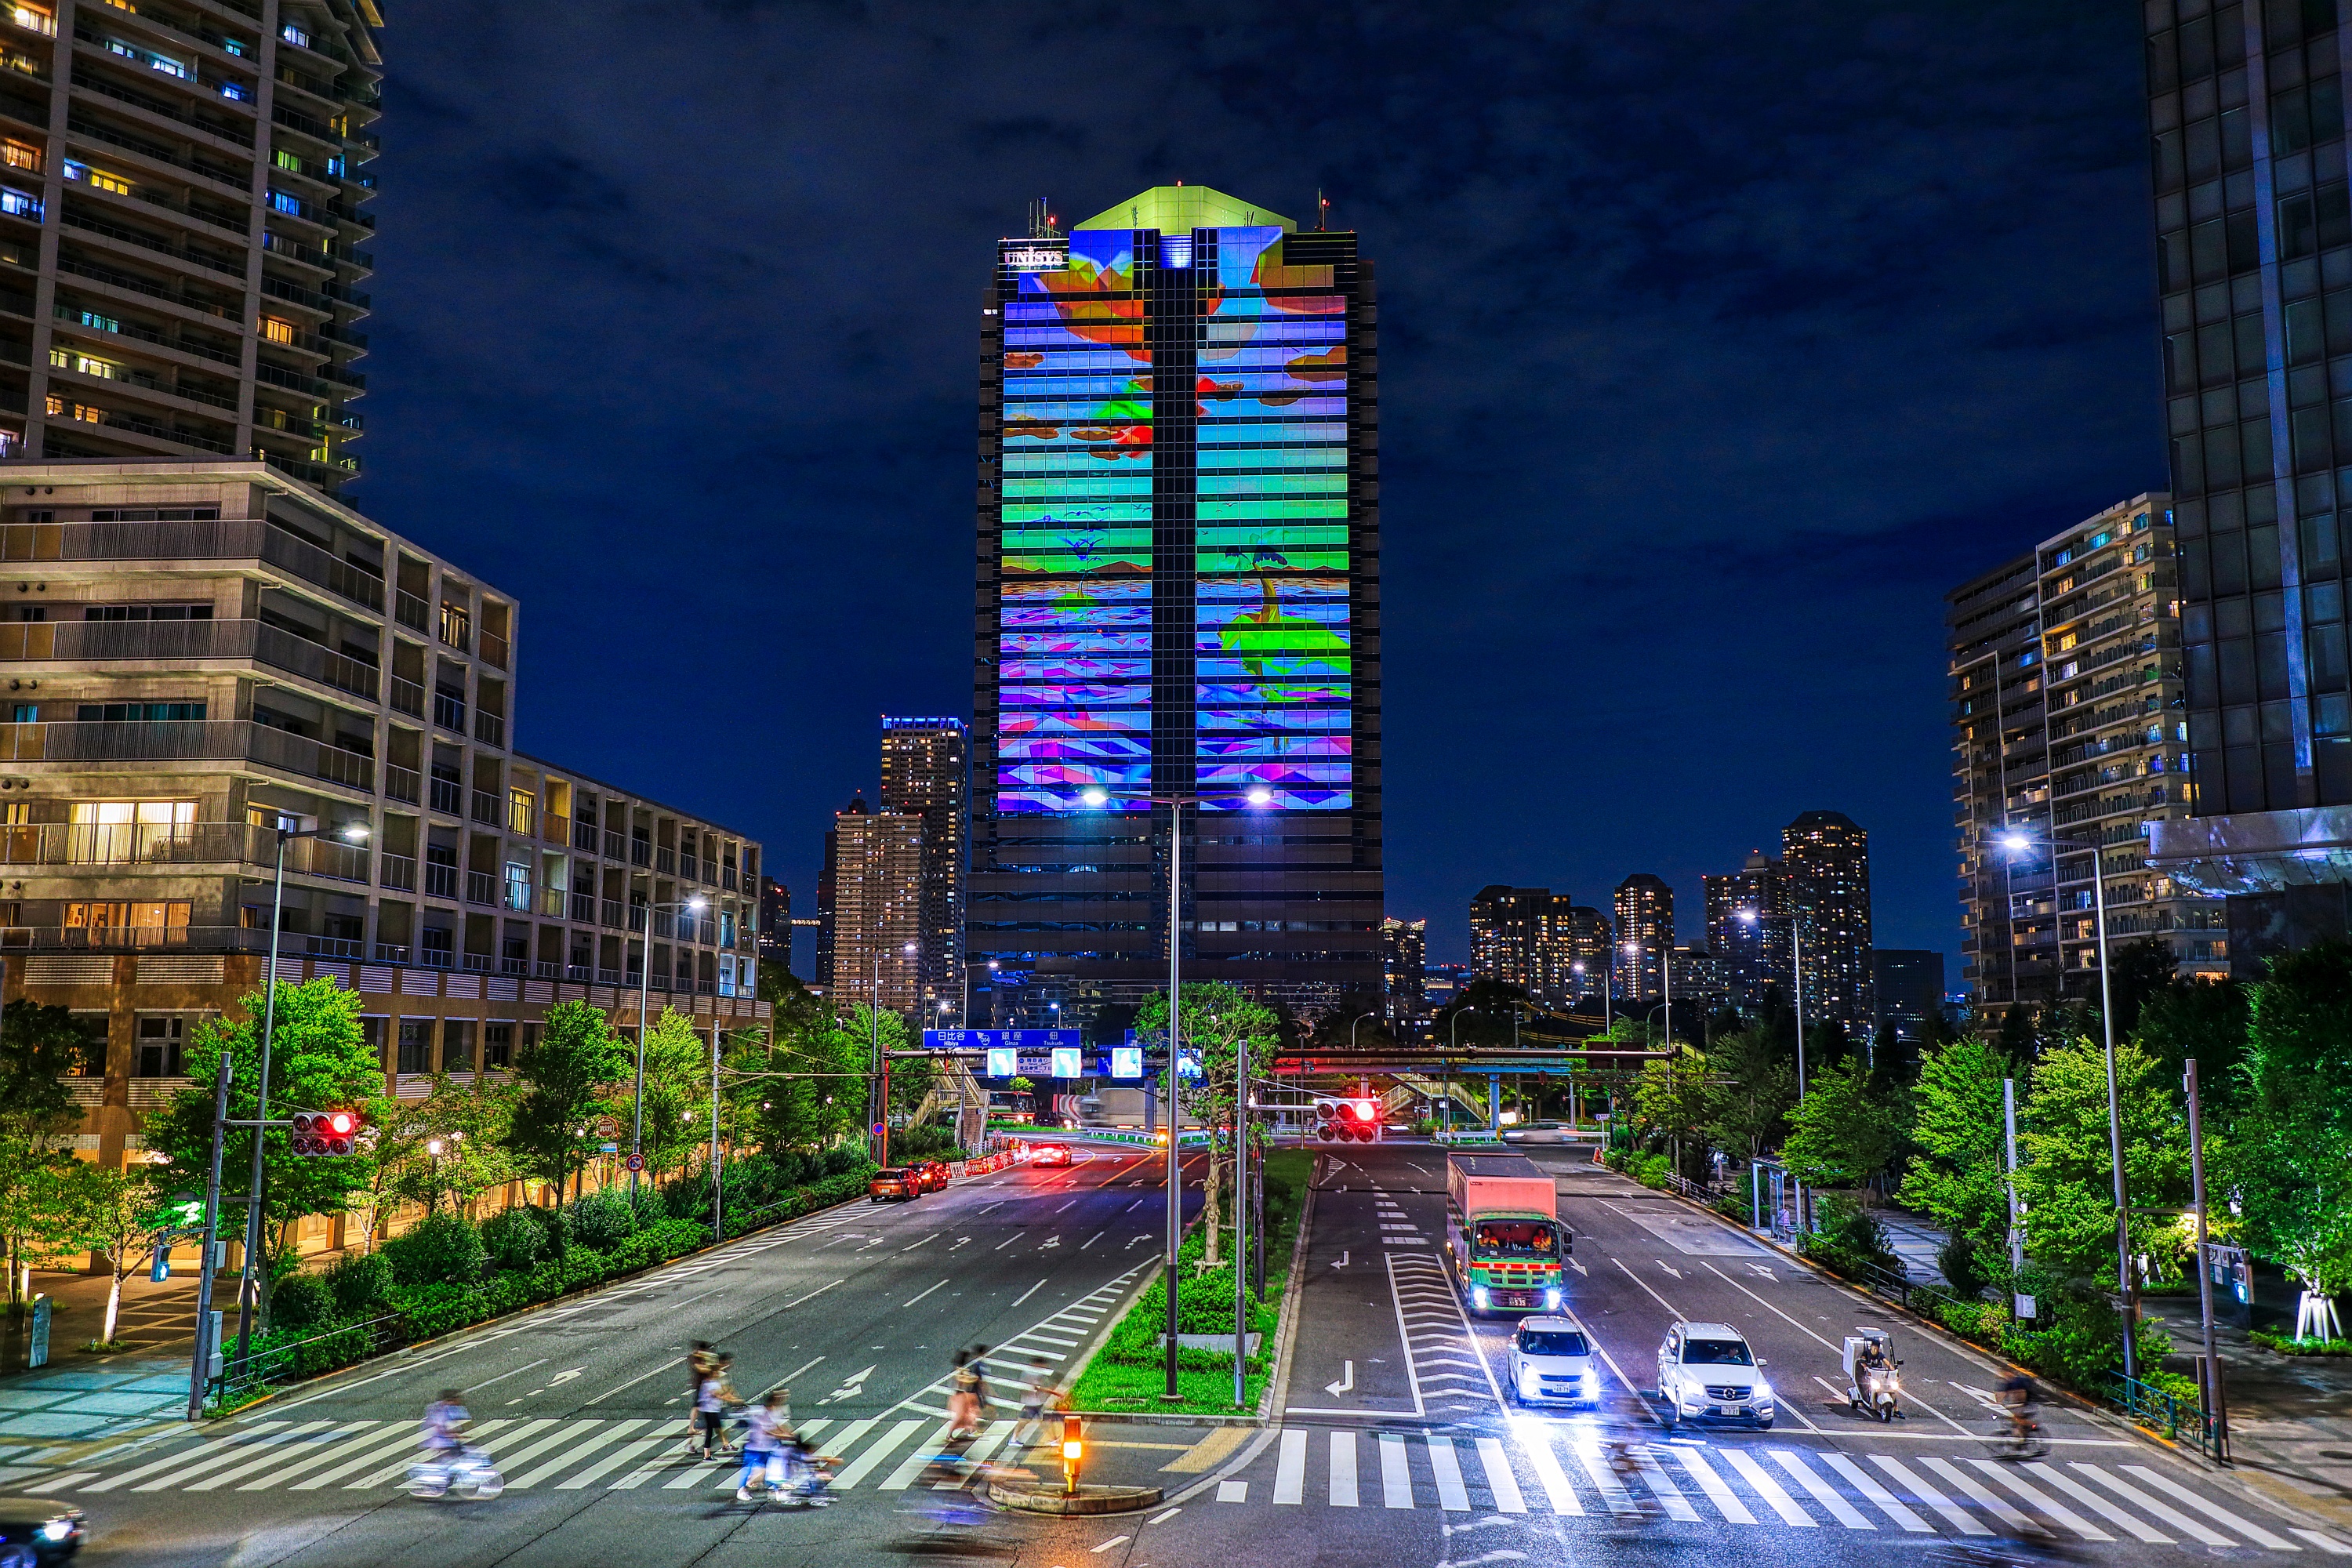 豊洲の 日本ユニシス本社ビル の壁面を使ったプロジェクションマッピング 晴海のタワマン群夜景 19 8 31 超高層マンション 超高層ビル